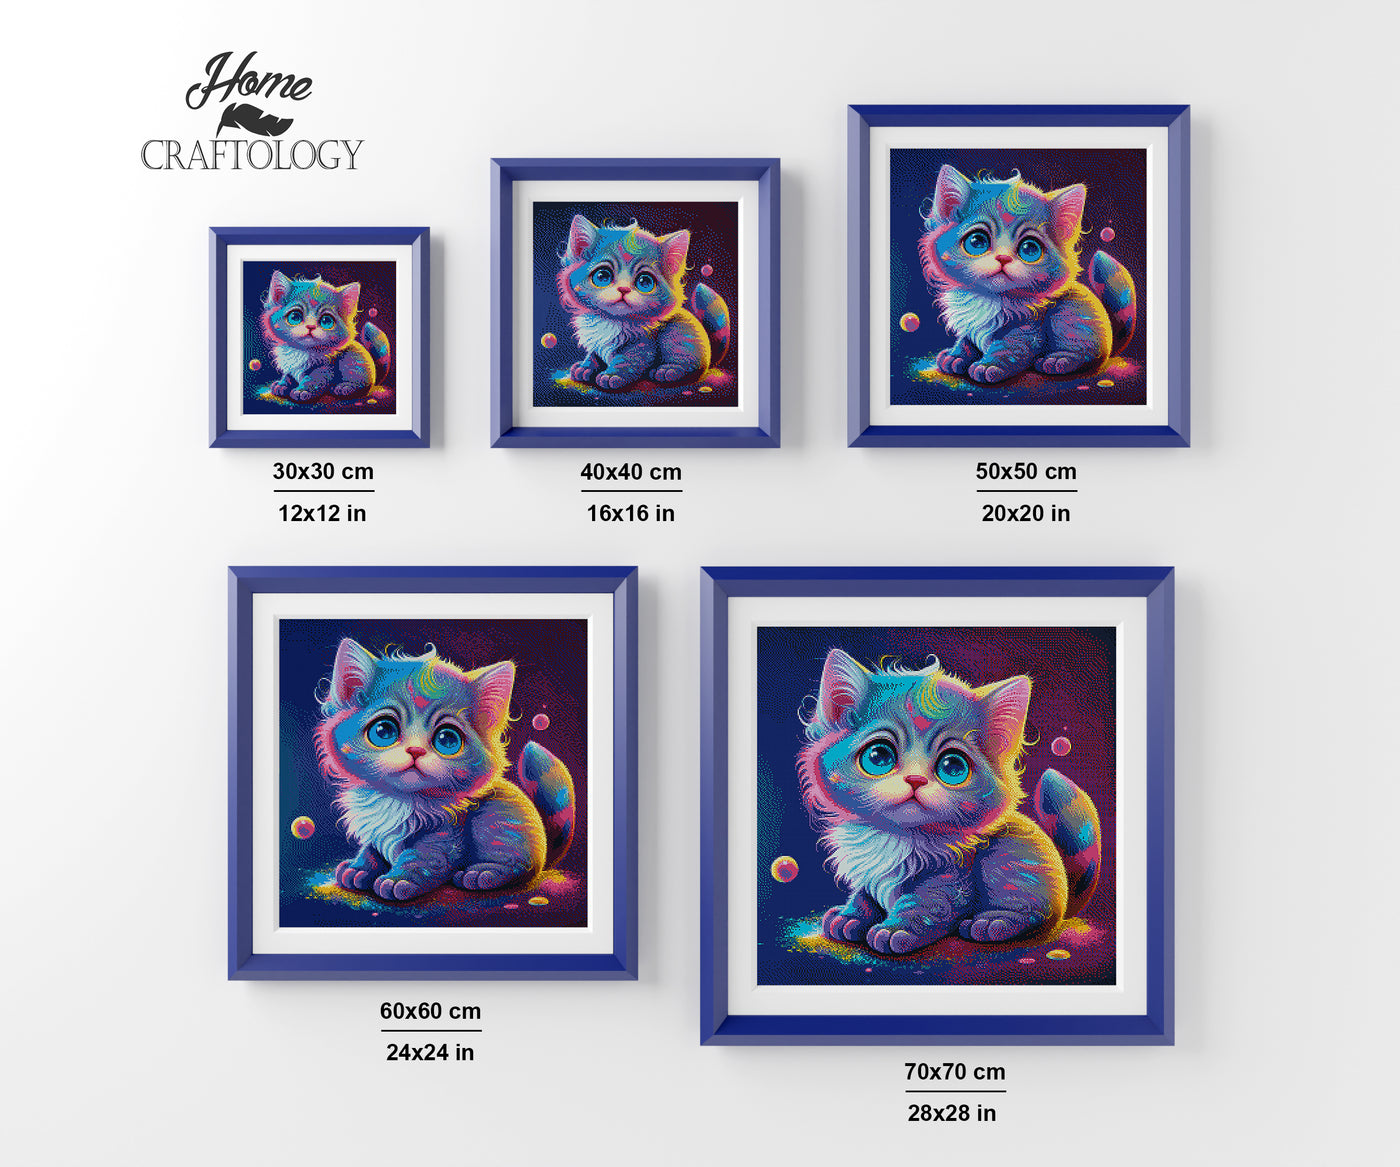 Cute Kitten - Premium Diamond Painting Kit